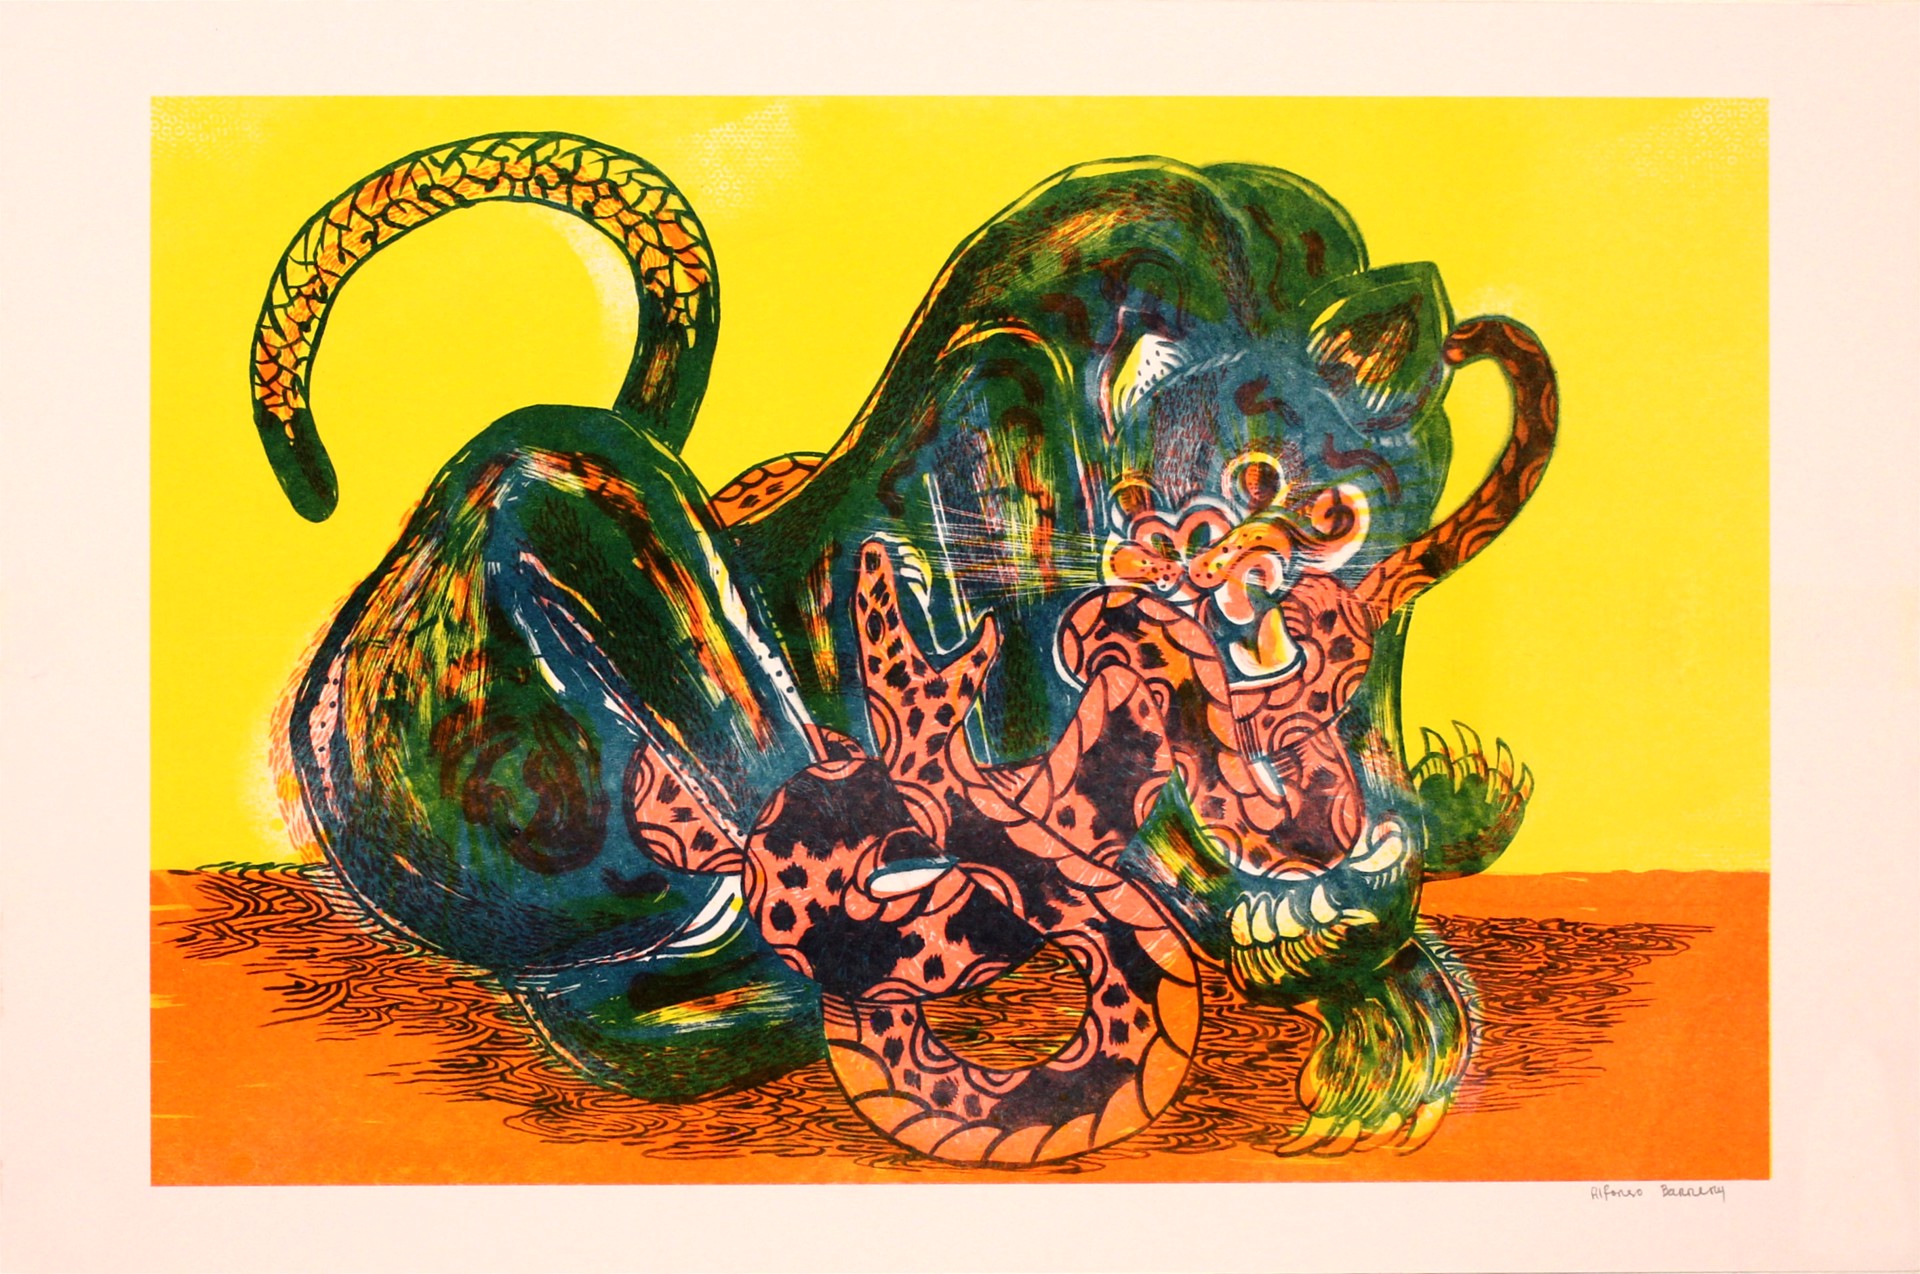 Jaguar y Serpiente by Alfonso Barrera